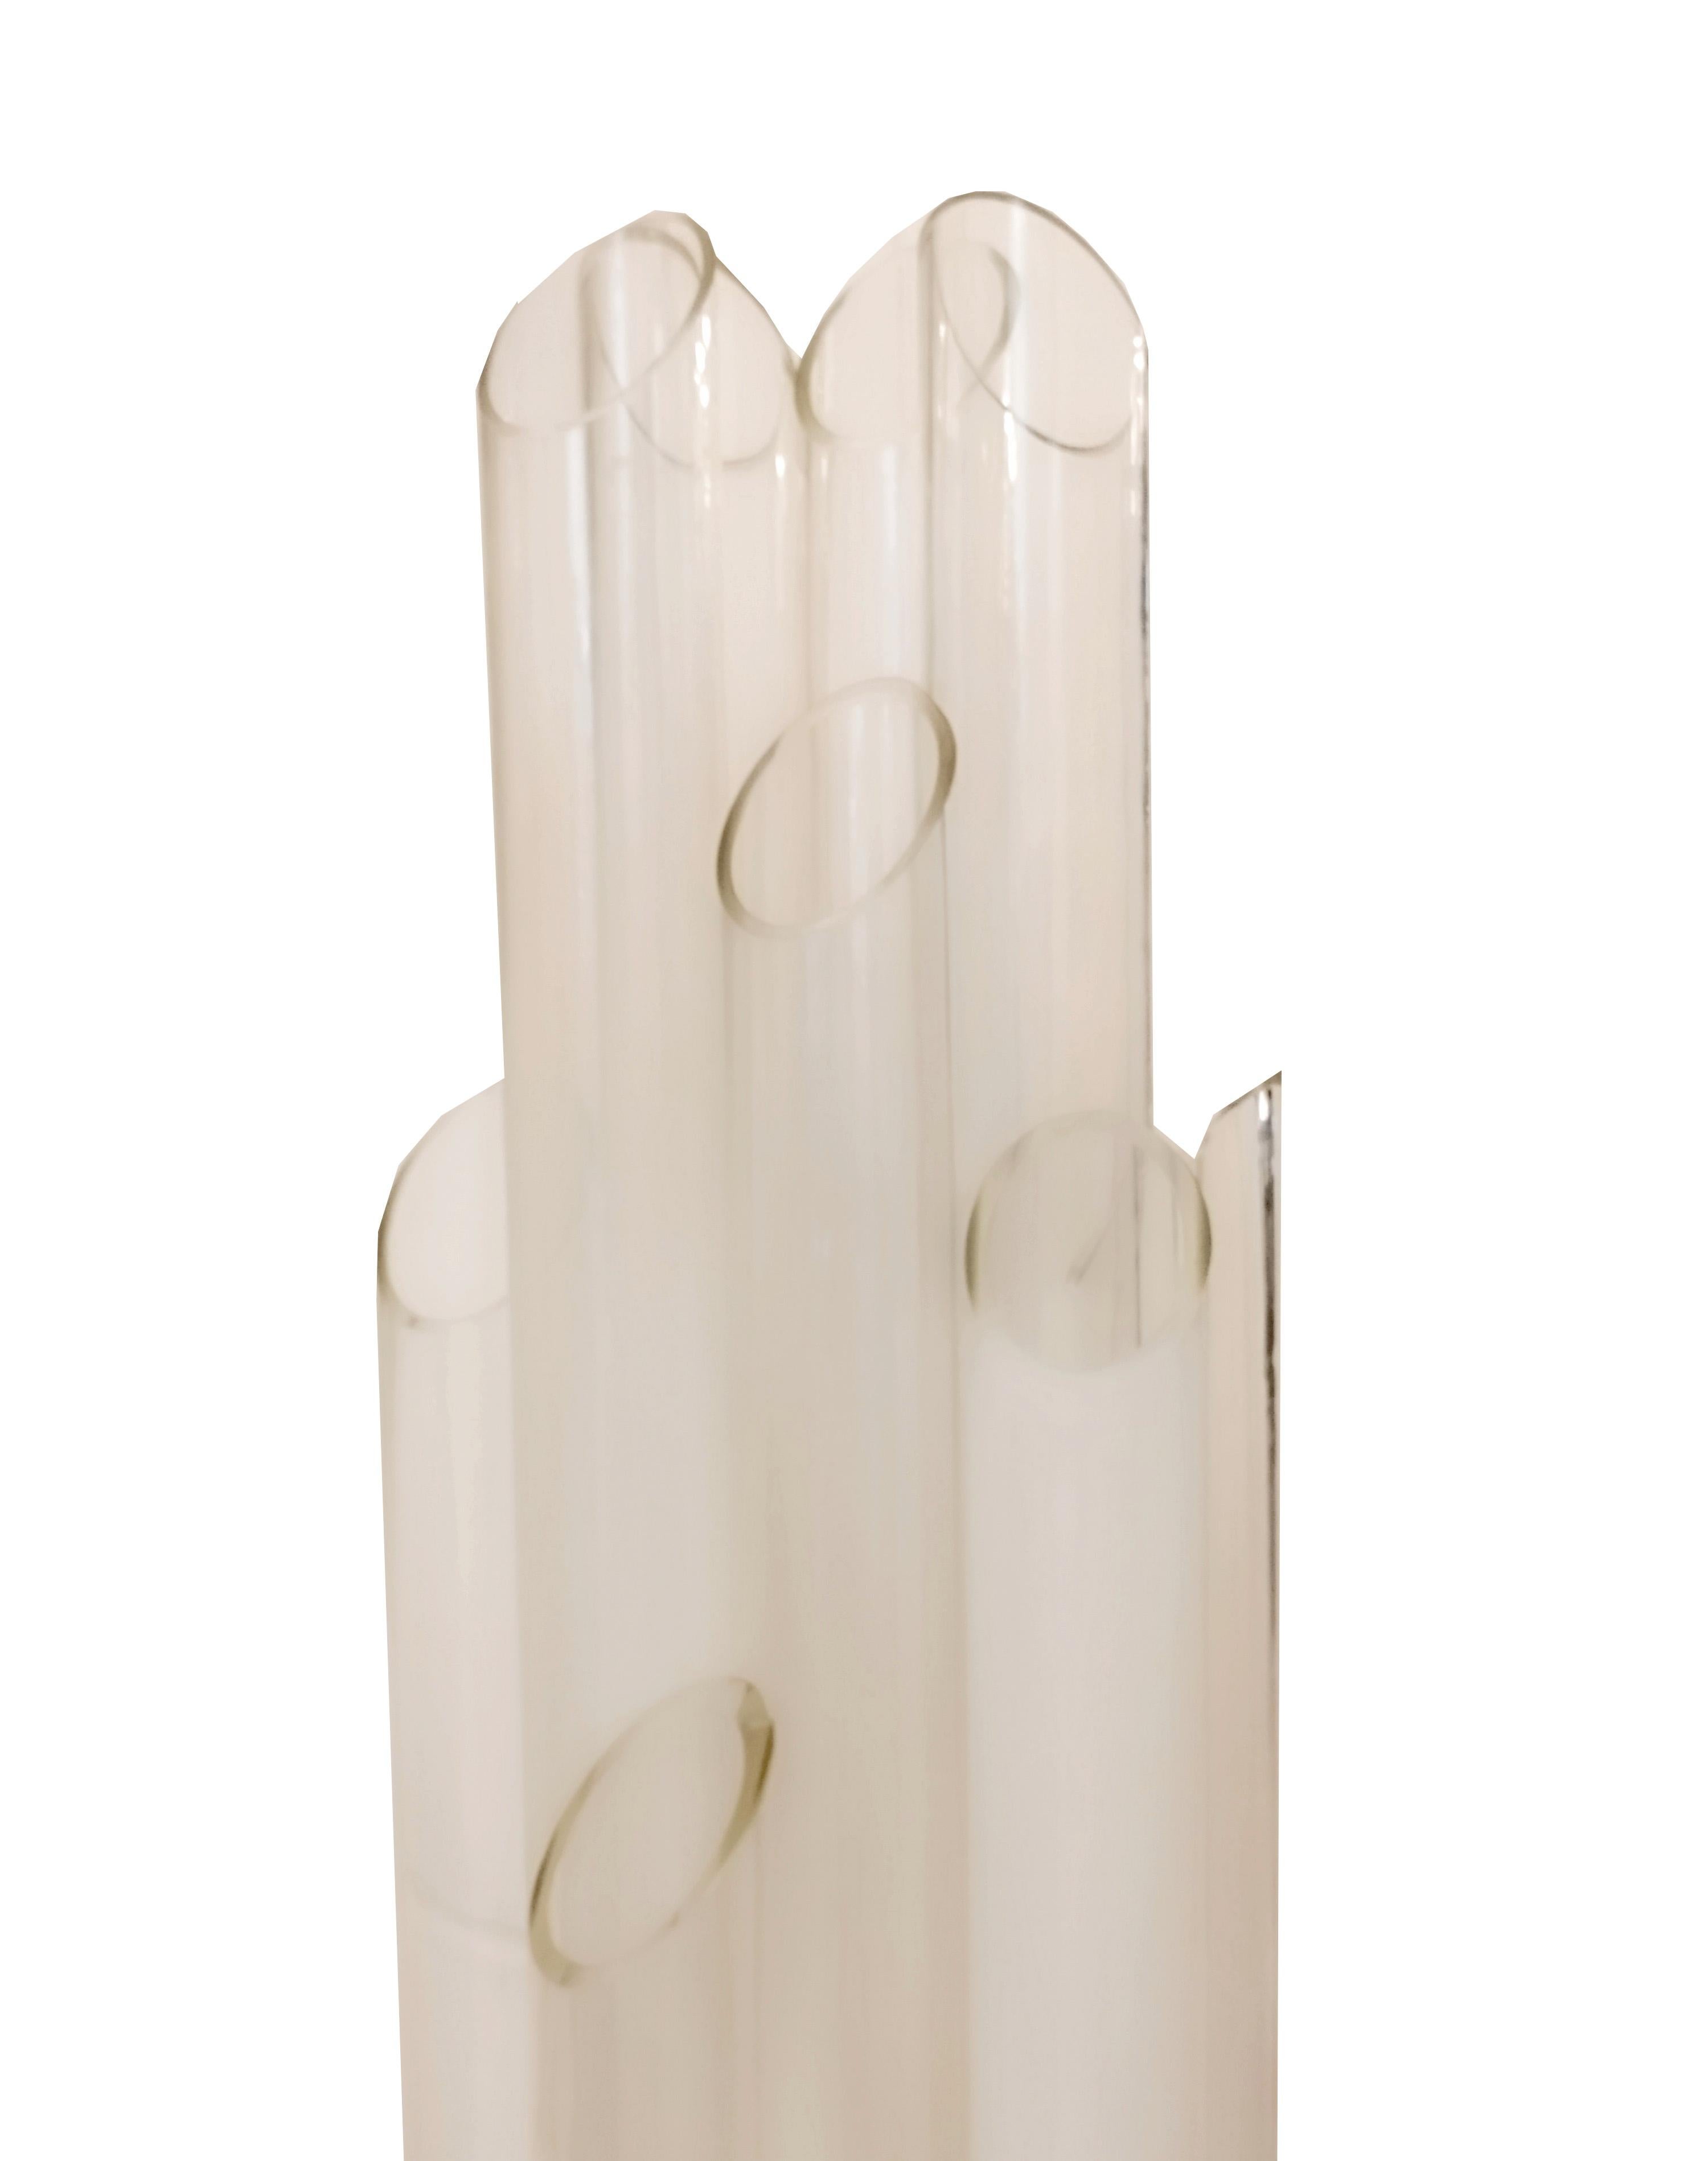 Cet élégant lampadaire, fabriqué dans les années 1970 en Italie, a été conçu par Carlo Nason pour Mazzega. Elle est réalisée en métal chromé et comporte 9 points lumineux reposant sur des pieds de forme circulaire, avec des abat-jours en verre de